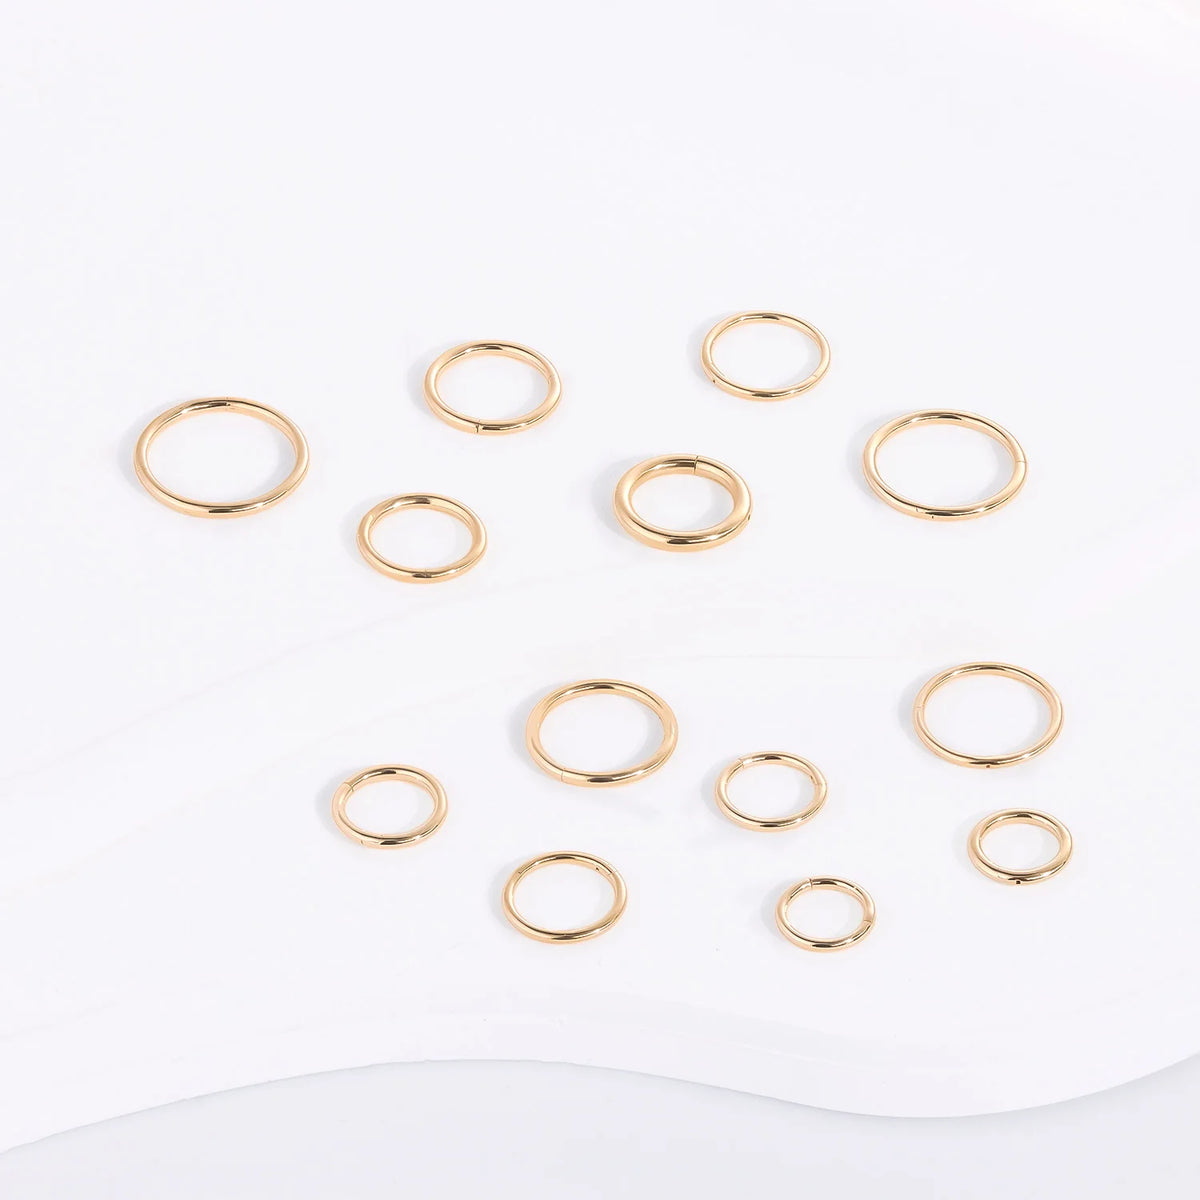 Cerceau de nez en or 14 carats, anneau de clicker, anneau de septum, piercing d'oreille en or massif